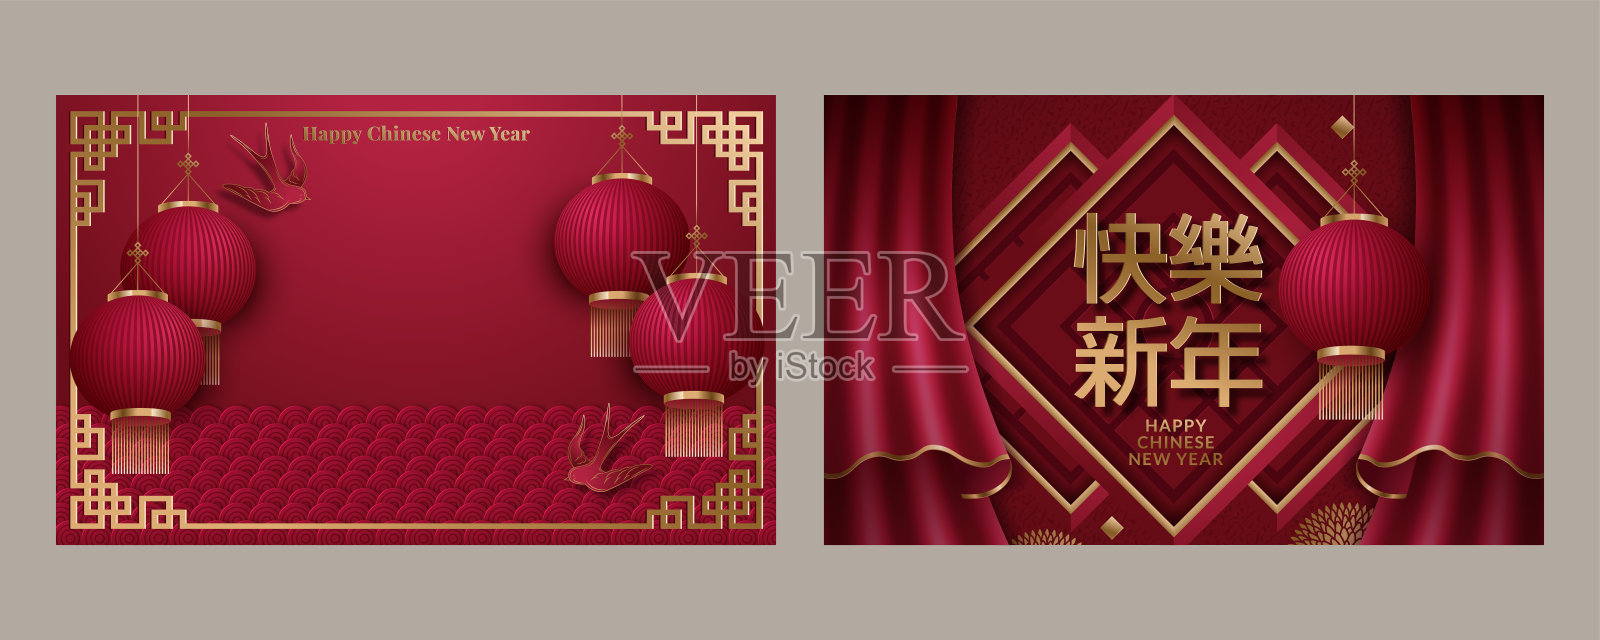 精美的2020年中国新年海报。翻译:新年快乐。矢量图设计模板素材